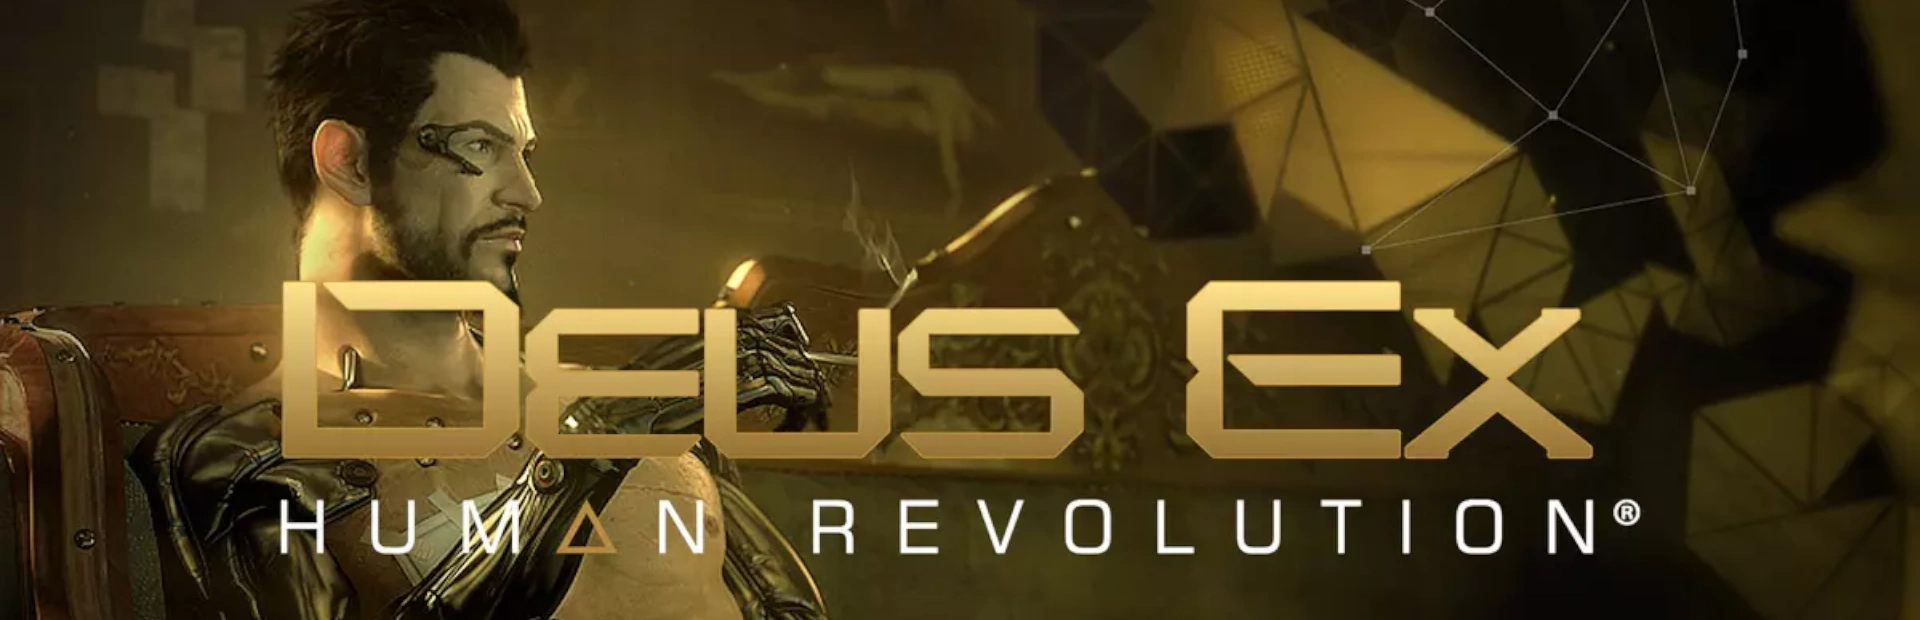 دانلود بازی Deus Ex Human Revolution برای کامپیوتر | گیمباتو